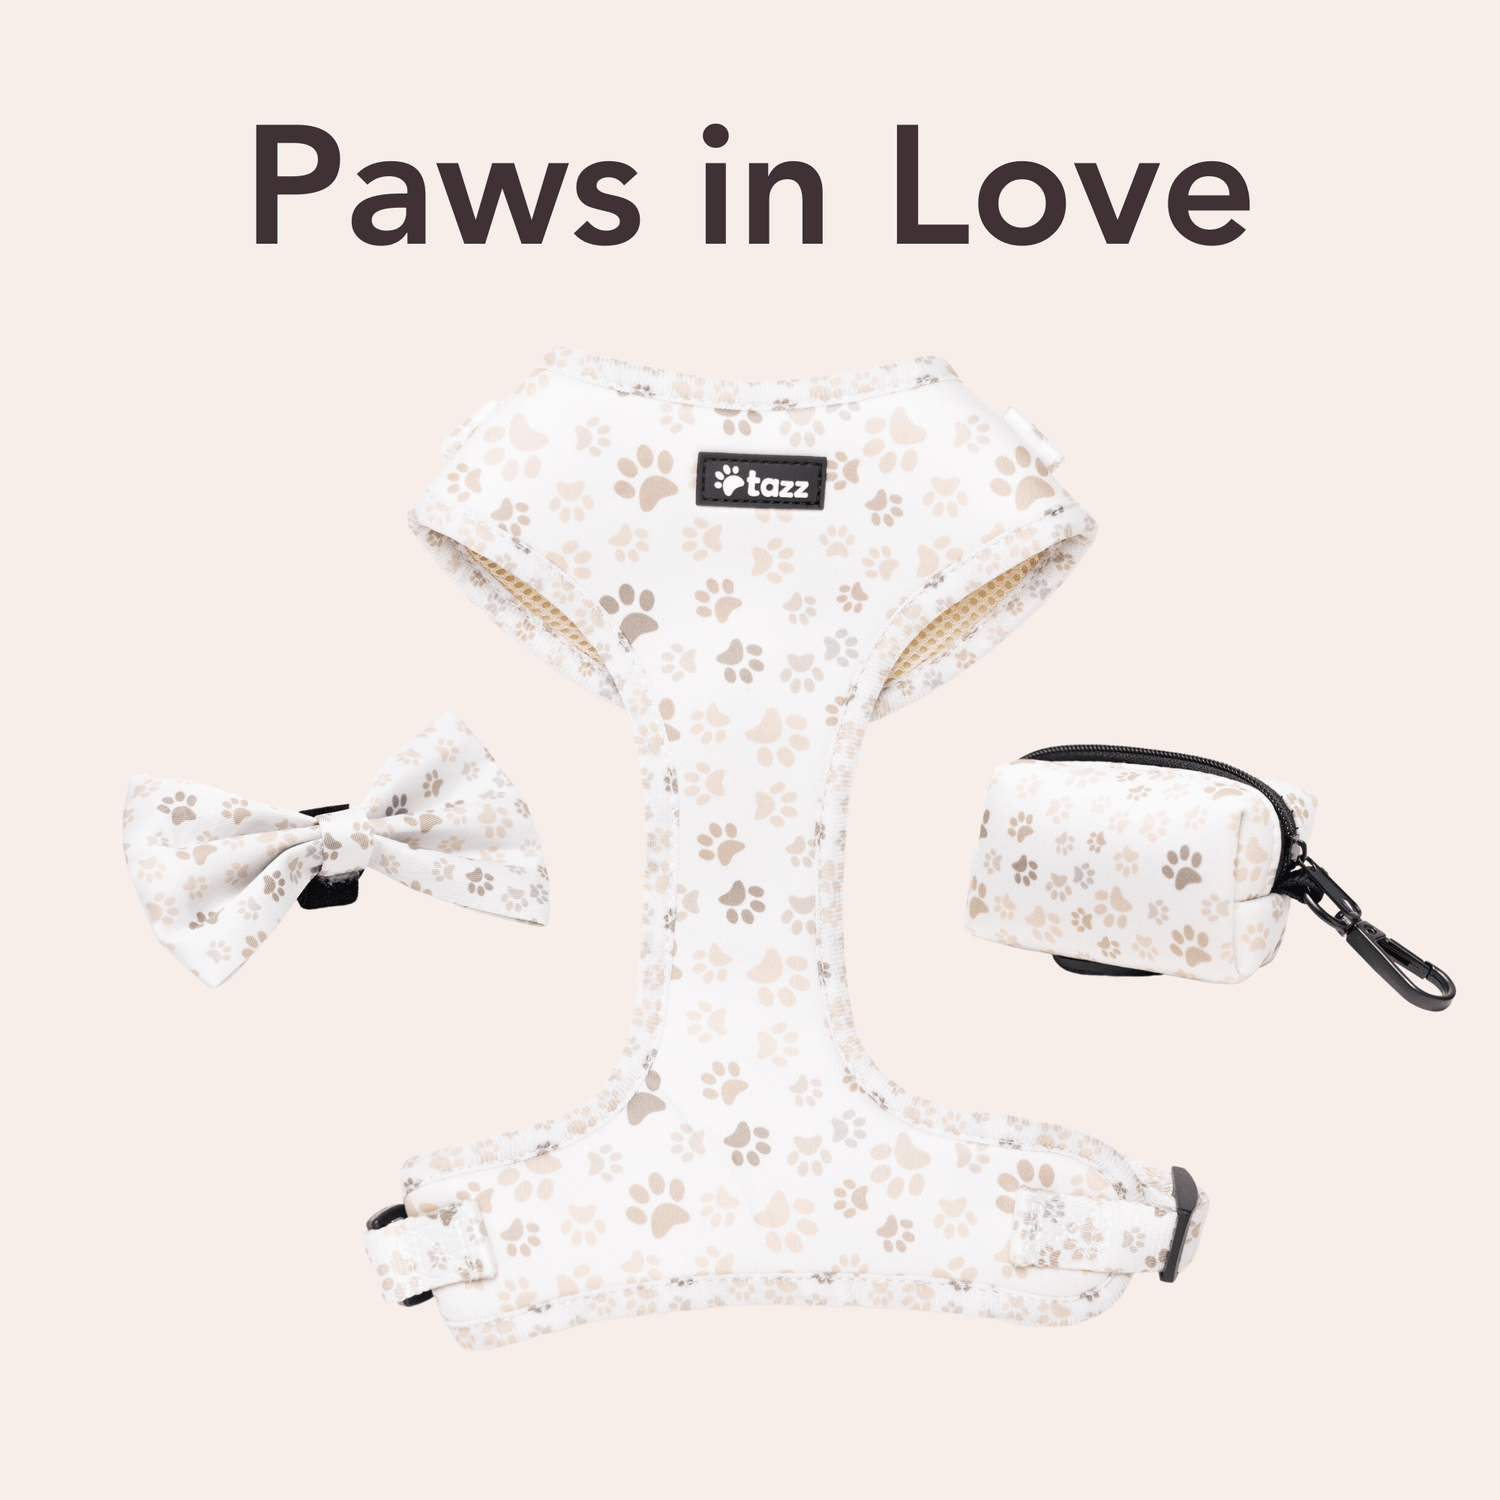 Paws in Love - Tazz